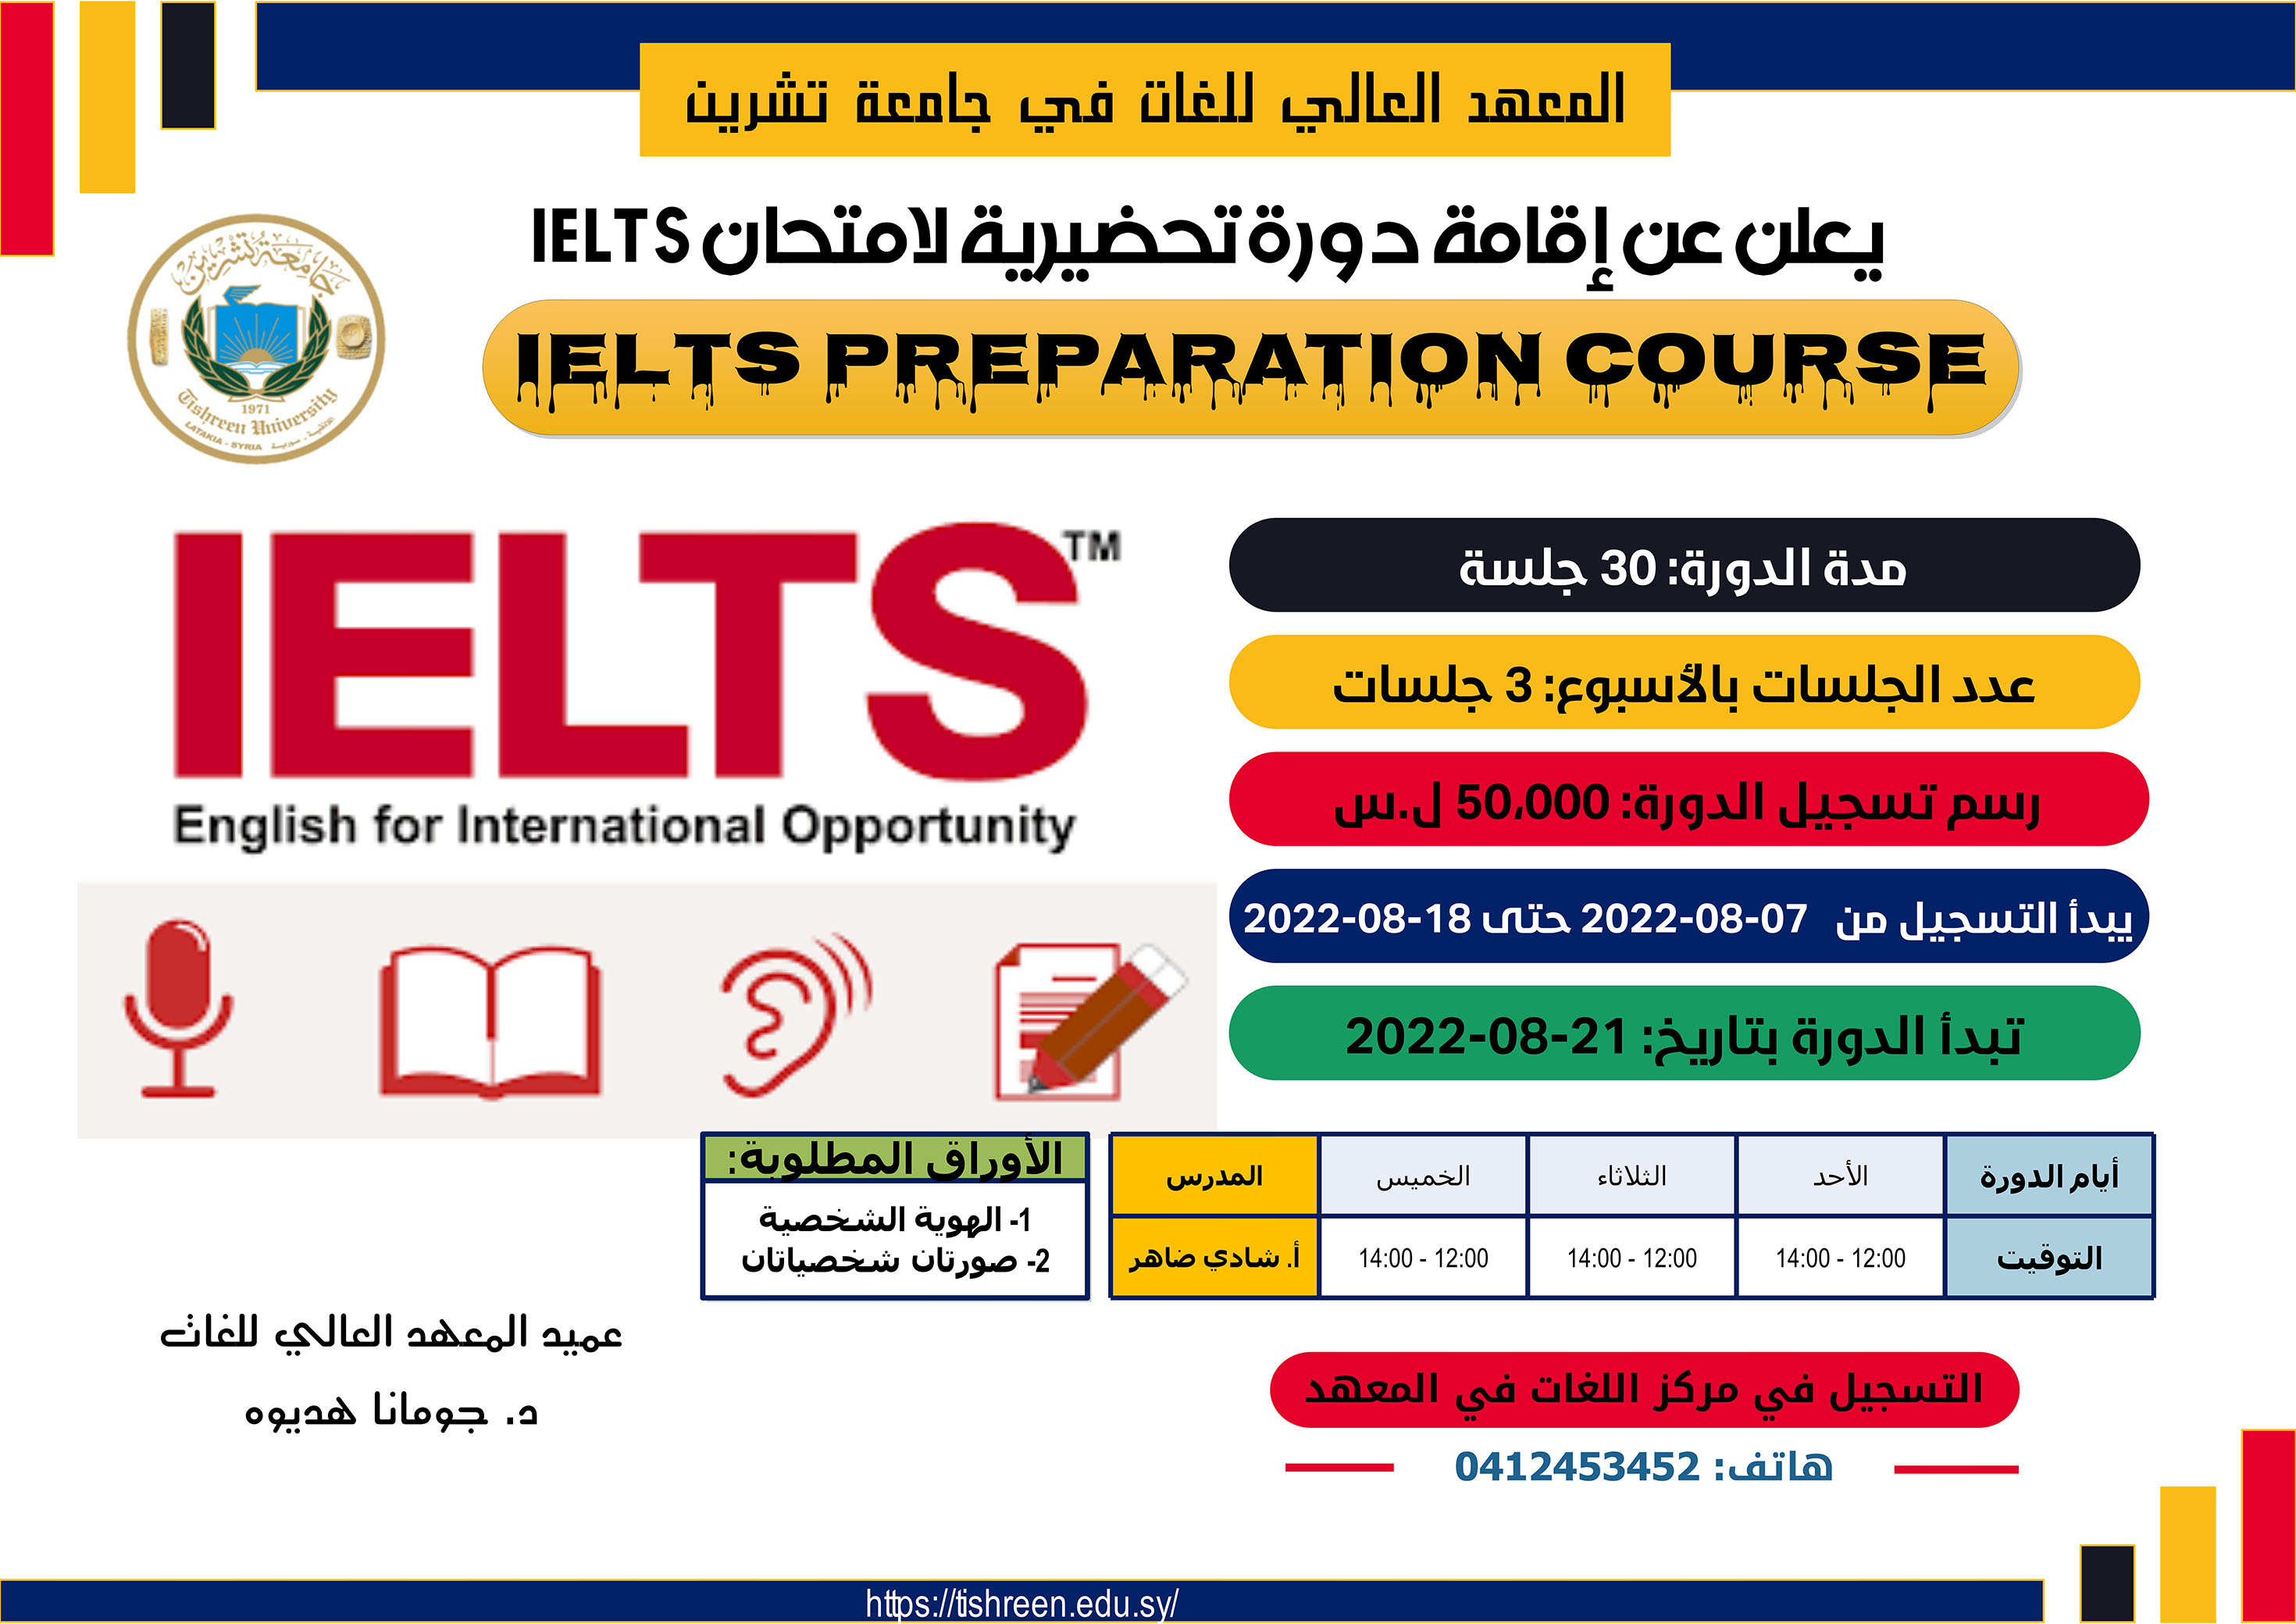 المعهد العالي للغات يعلن عن إقامة دورة تحضيرية لاختبار IELTS تبدأ بتاريخ 21-08-2022